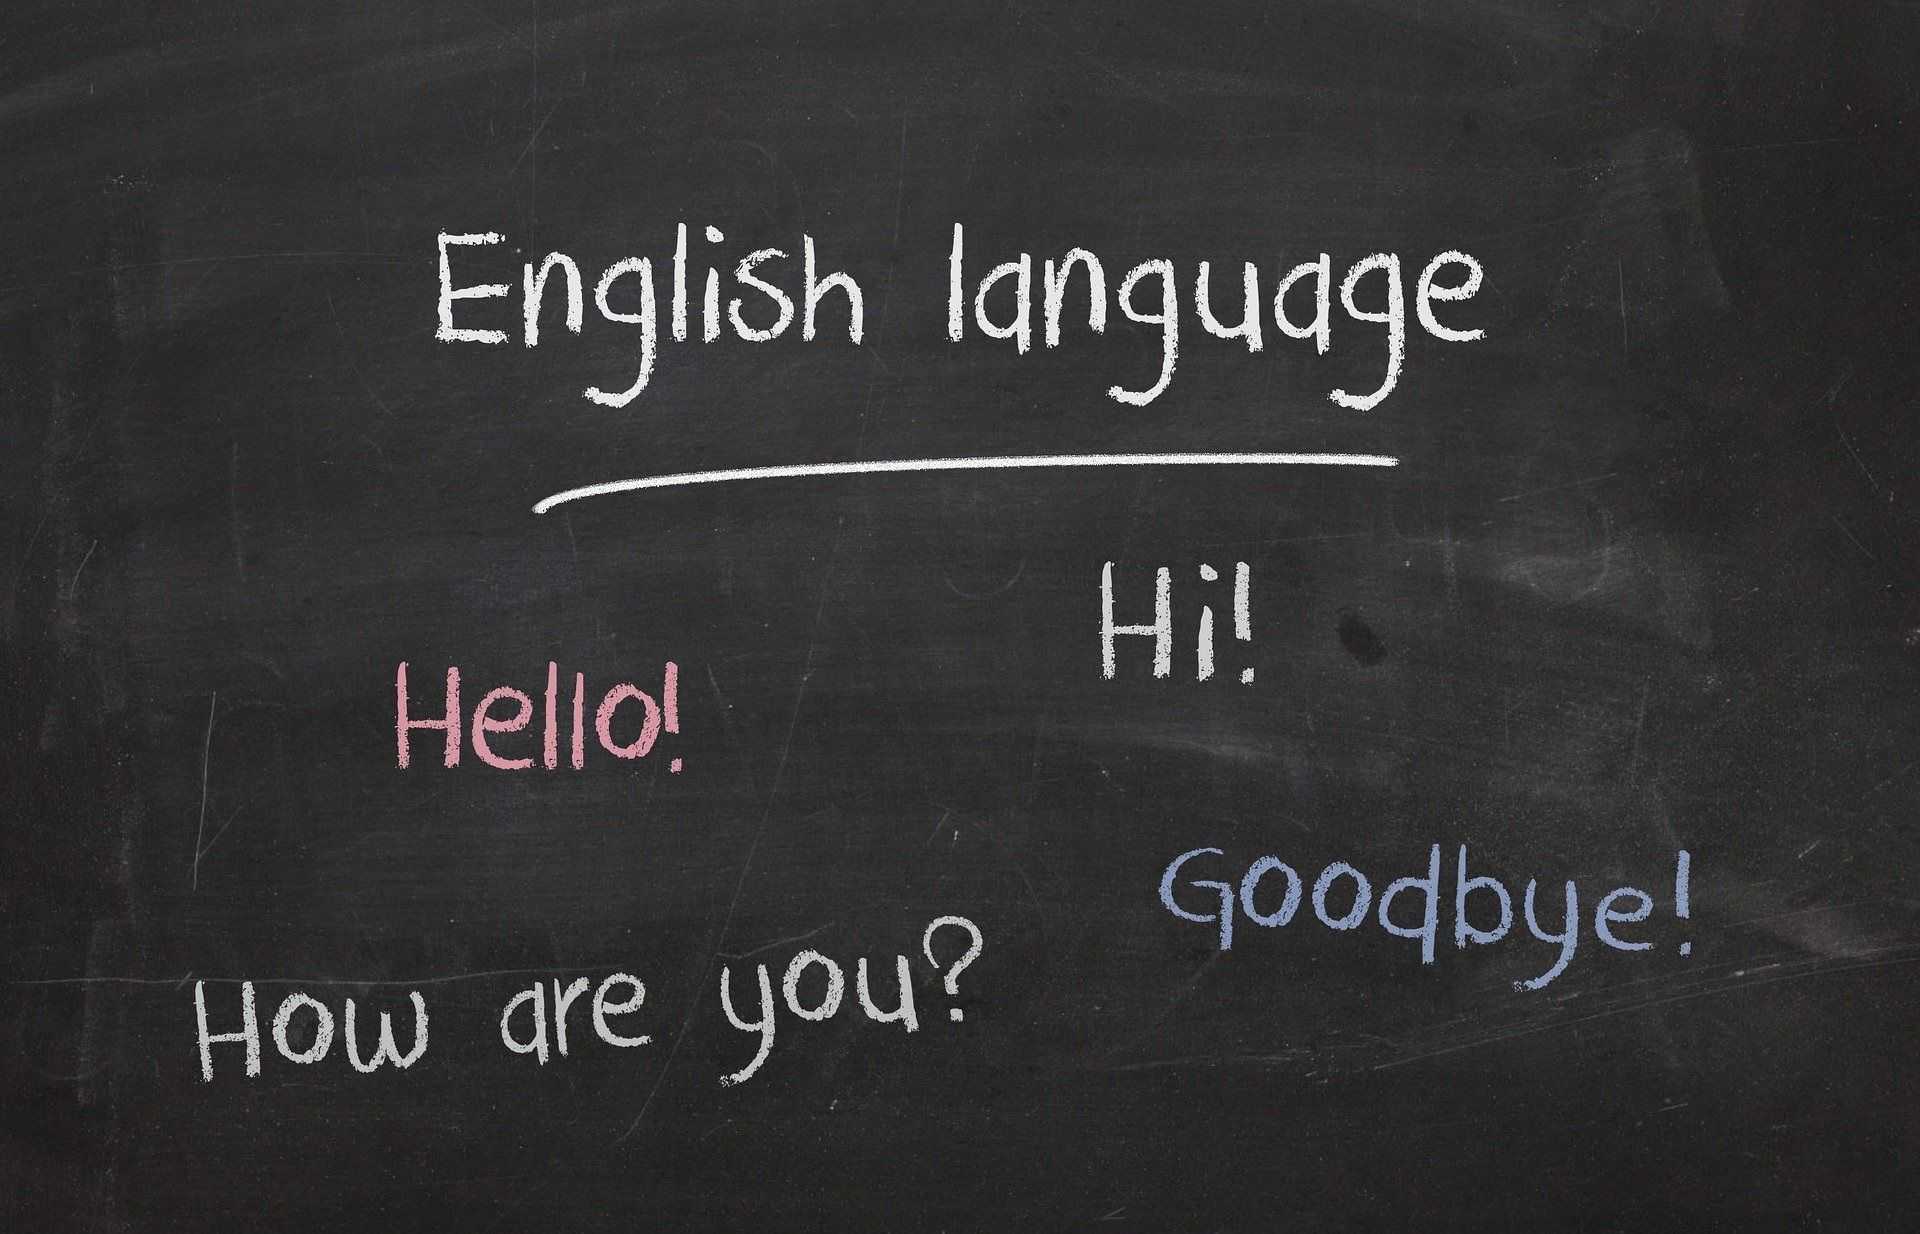 Englisch lernen eröffnet neue Horizonte.